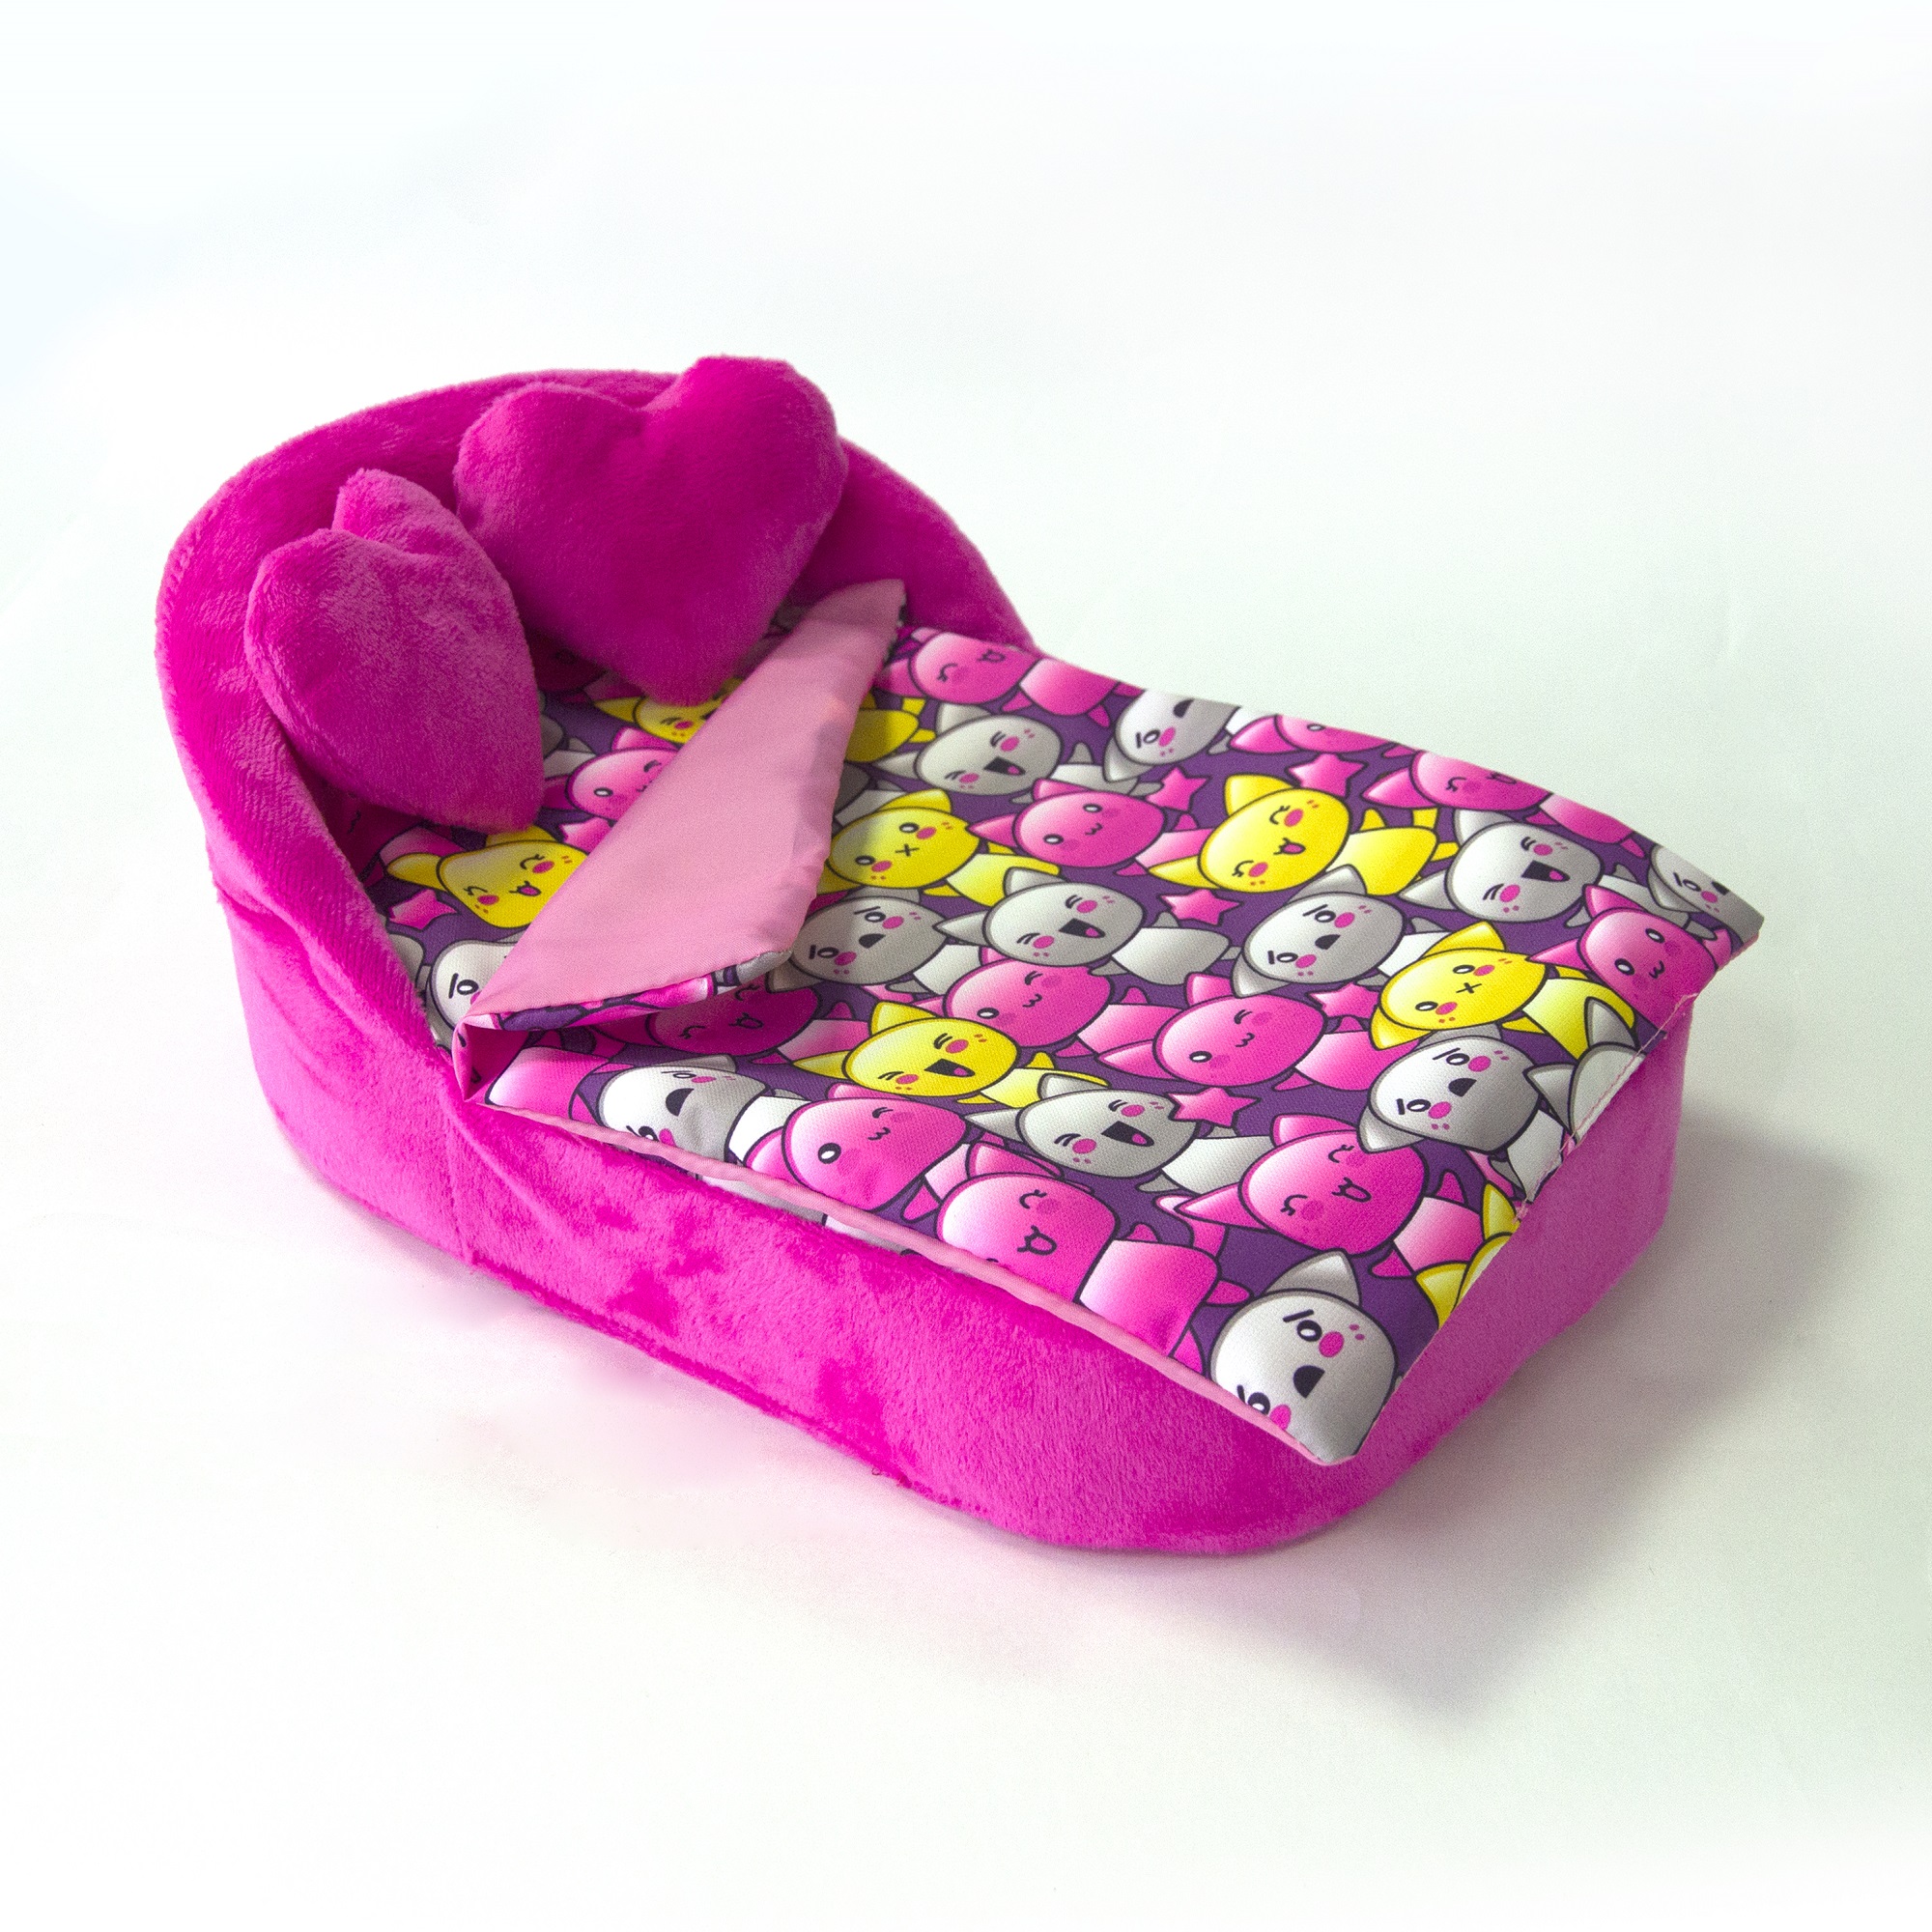 Набор мебели для кукол Belon familia Принт хор котят фиолетовый кровать с круглой спинкой 2 подушки НМ-003/4-33 - фото 1